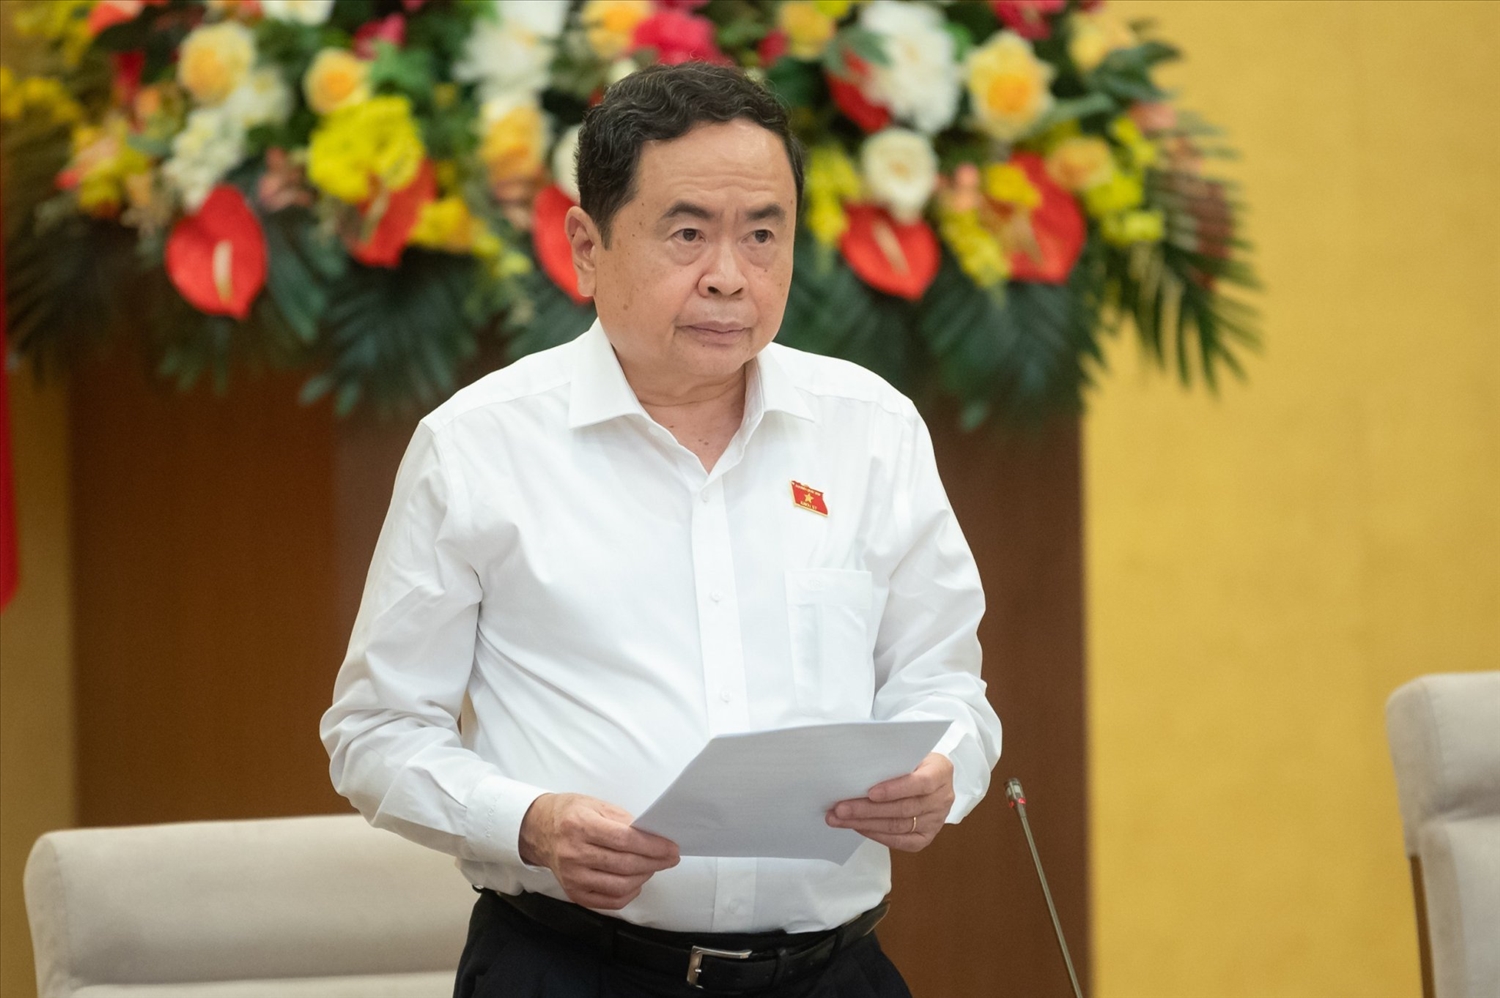 Phó Chủ tịch Thường trực Quốc hội Trần Thanh Mẫn điều hành nội dung phiên họp